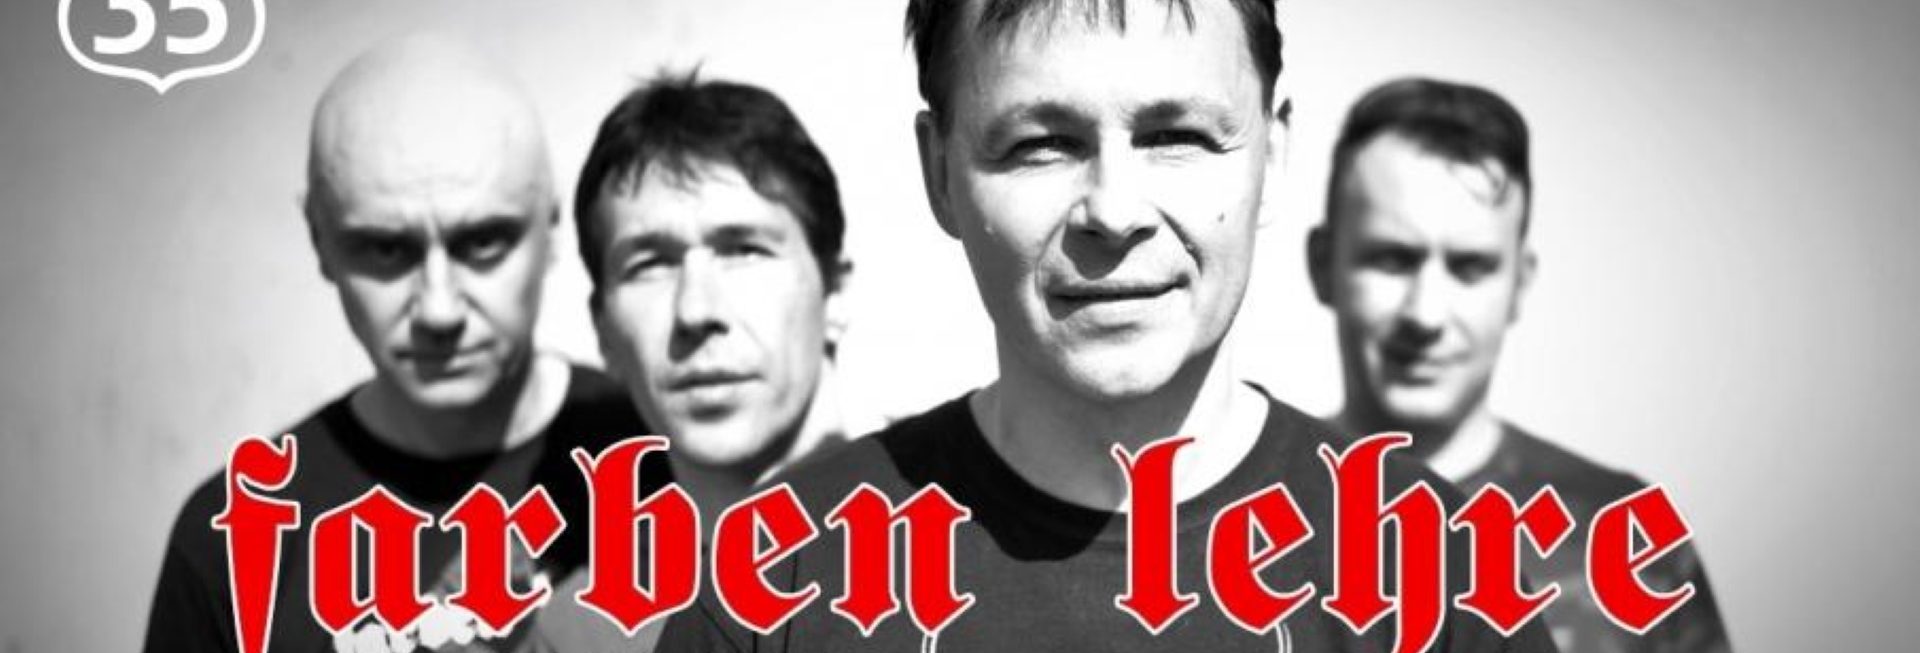 Plakat graficzny zapraszający do Olsztyna na koncert zespołu Farben Lehre Olsztyn 2022.